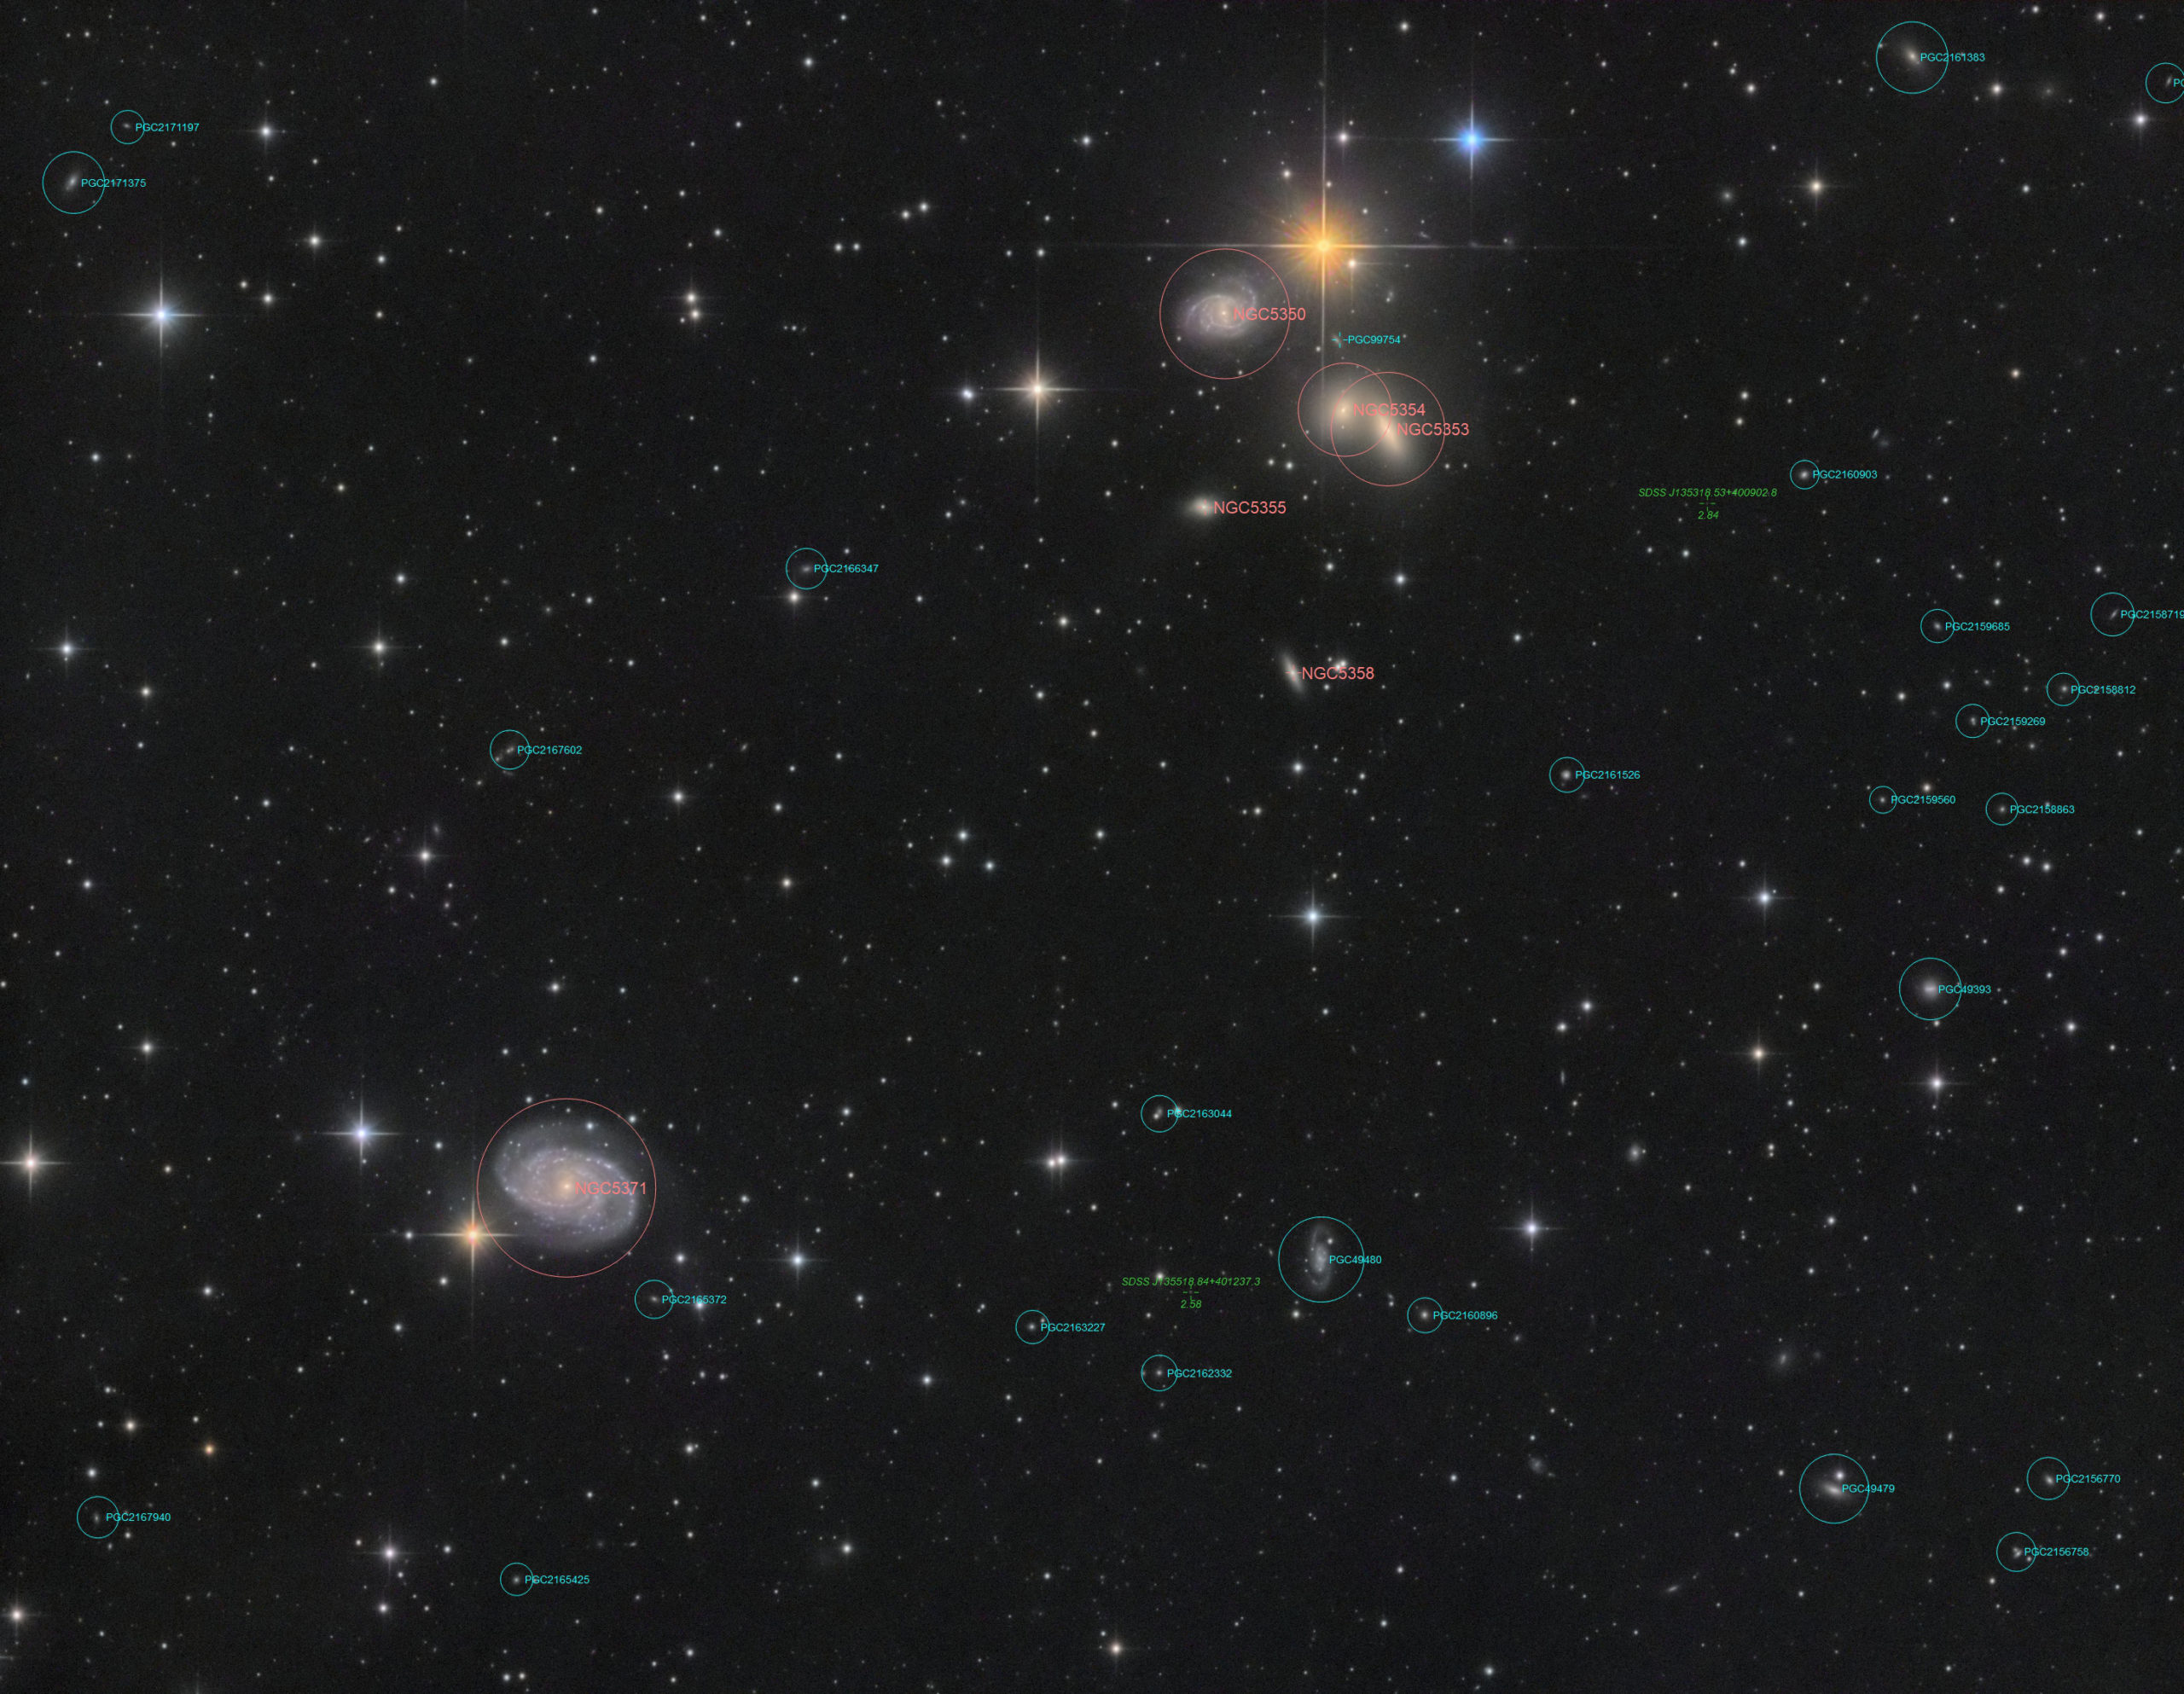 HCG 68 and NGC 5371